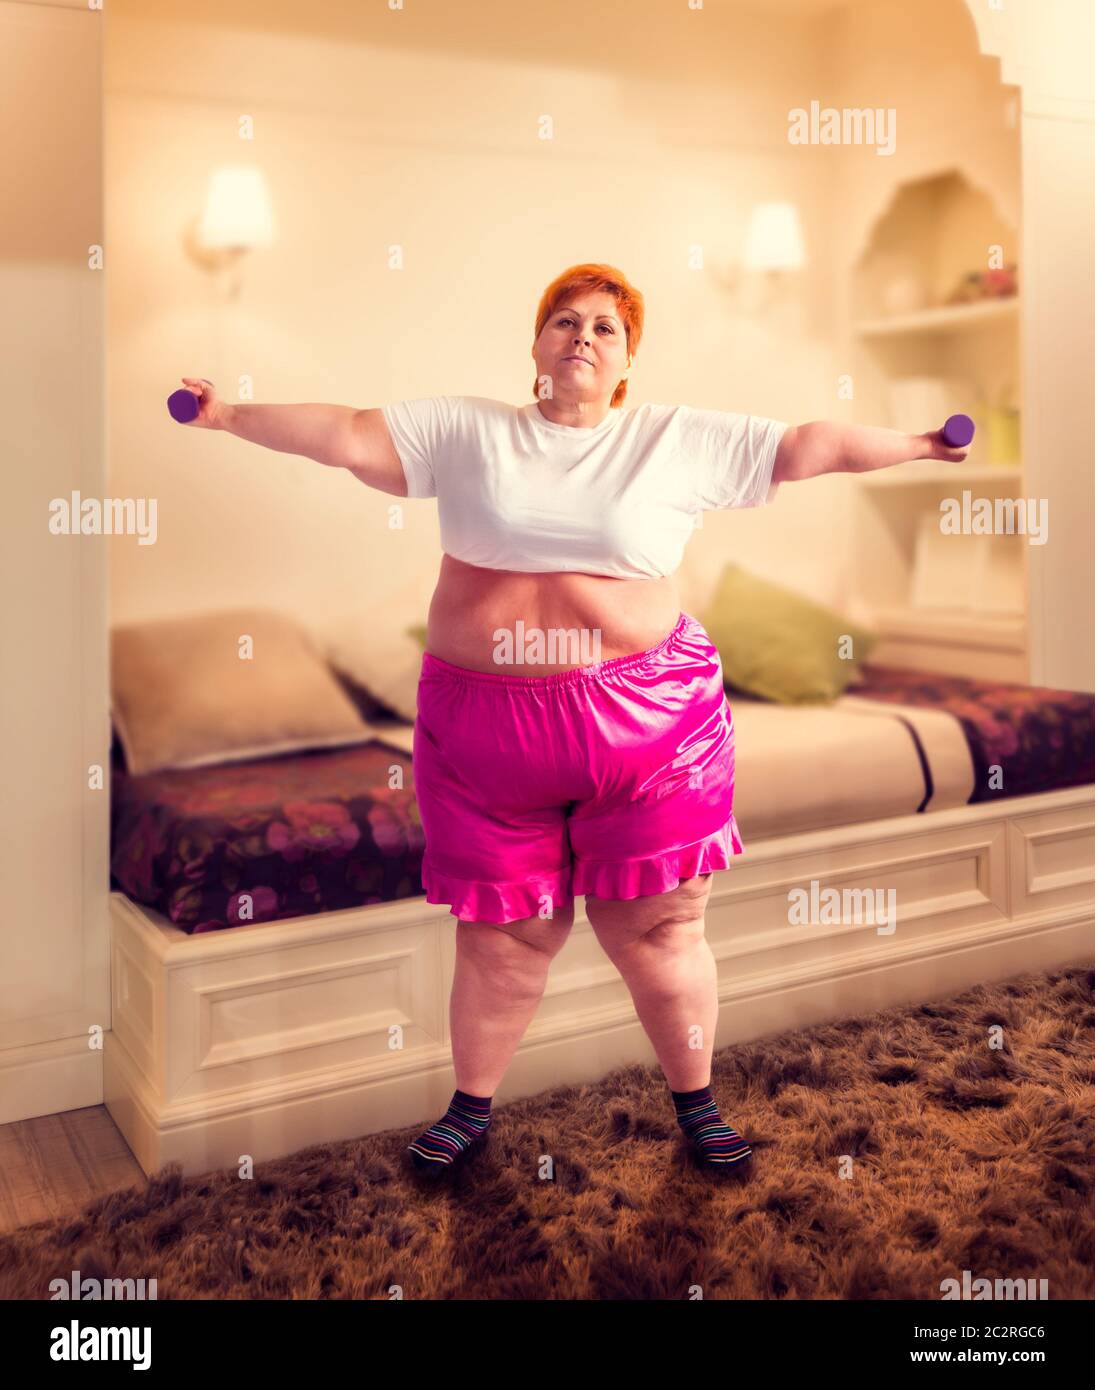 Grosse femme sur la formation avec haltères courtes, lutte contre l'obésité, l'excès de poids. Manger de la restauration rapide Banque D'Images